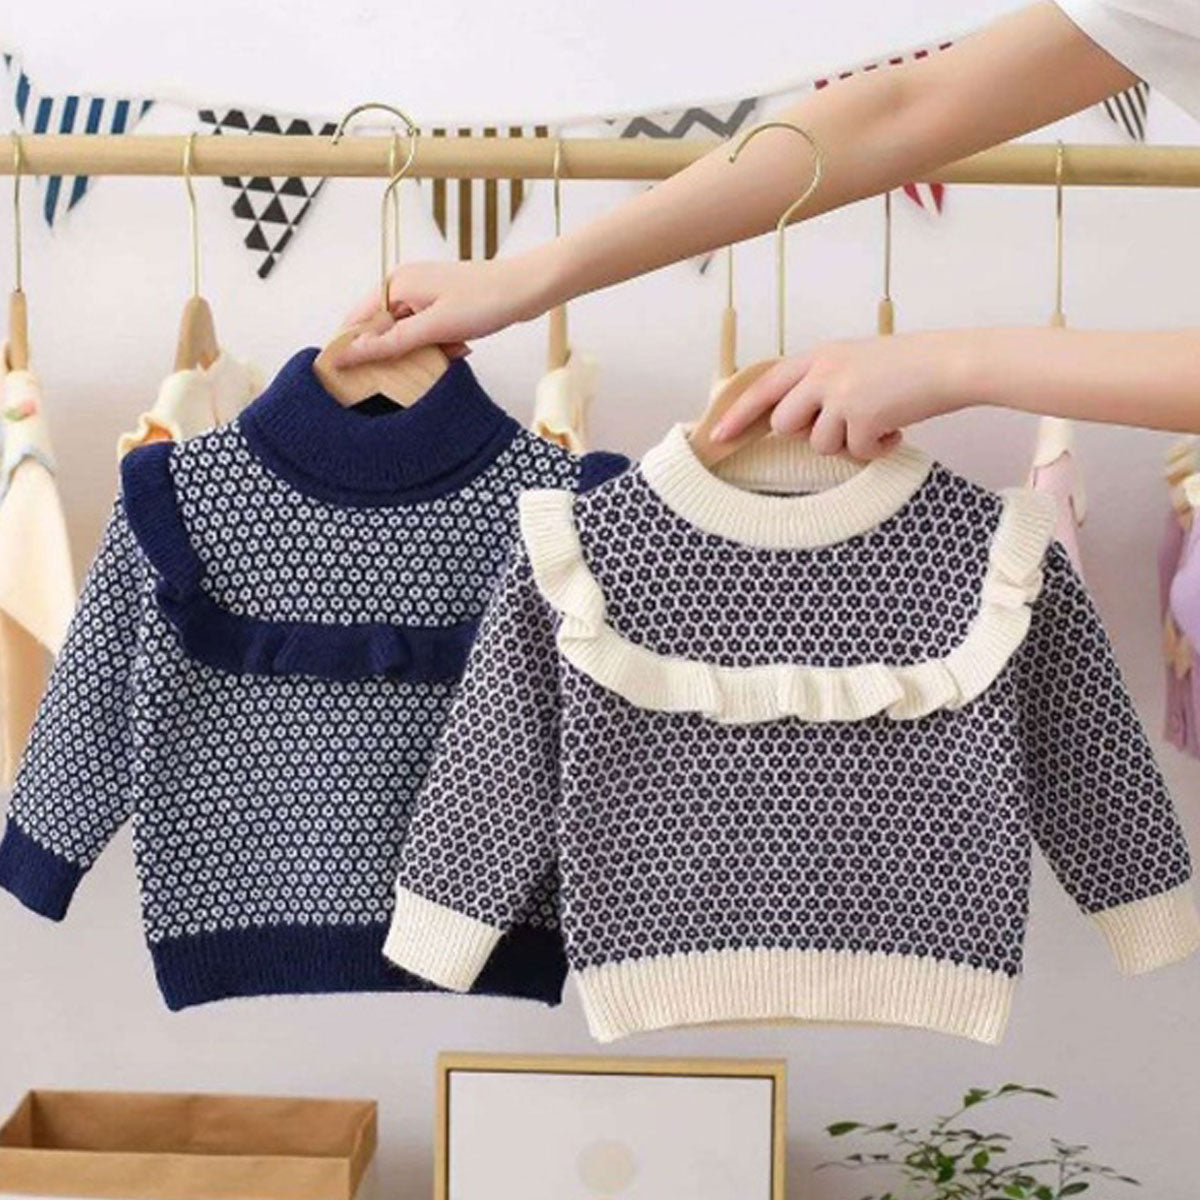 Full Sleeves Sweater for Girls